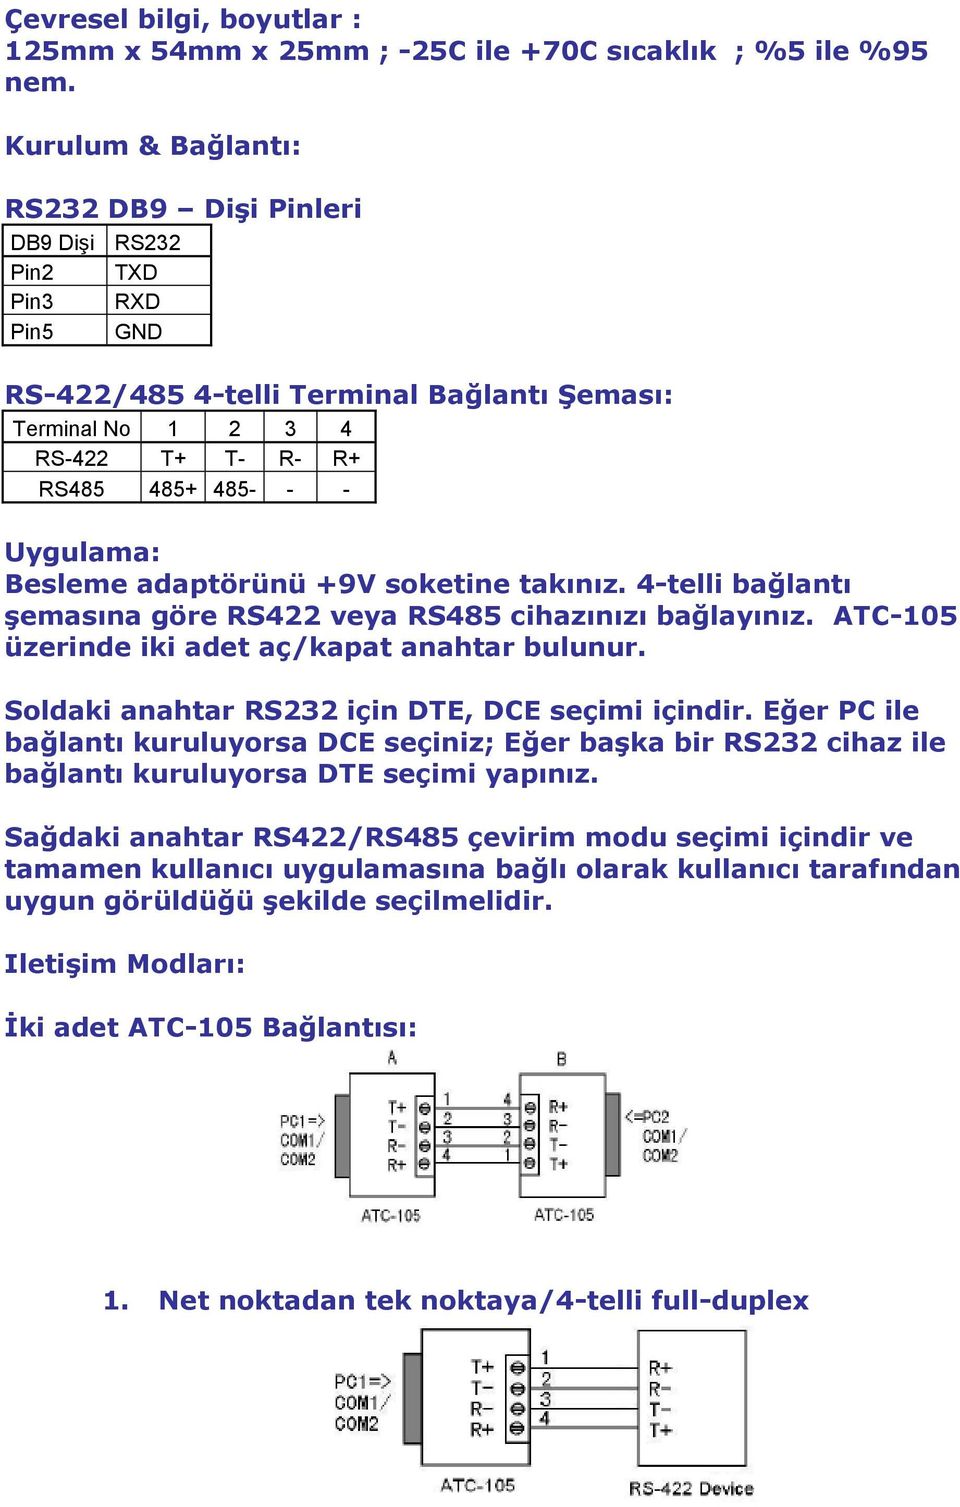 Besleme adaptörünü +9V soketine takınız. 4-telli bağlantı şemasına göre RS422 veya RS485 cihazınızı bağlayınız. ATC-105 üzerinde iki adet aç/kapat anahtar bulunur.